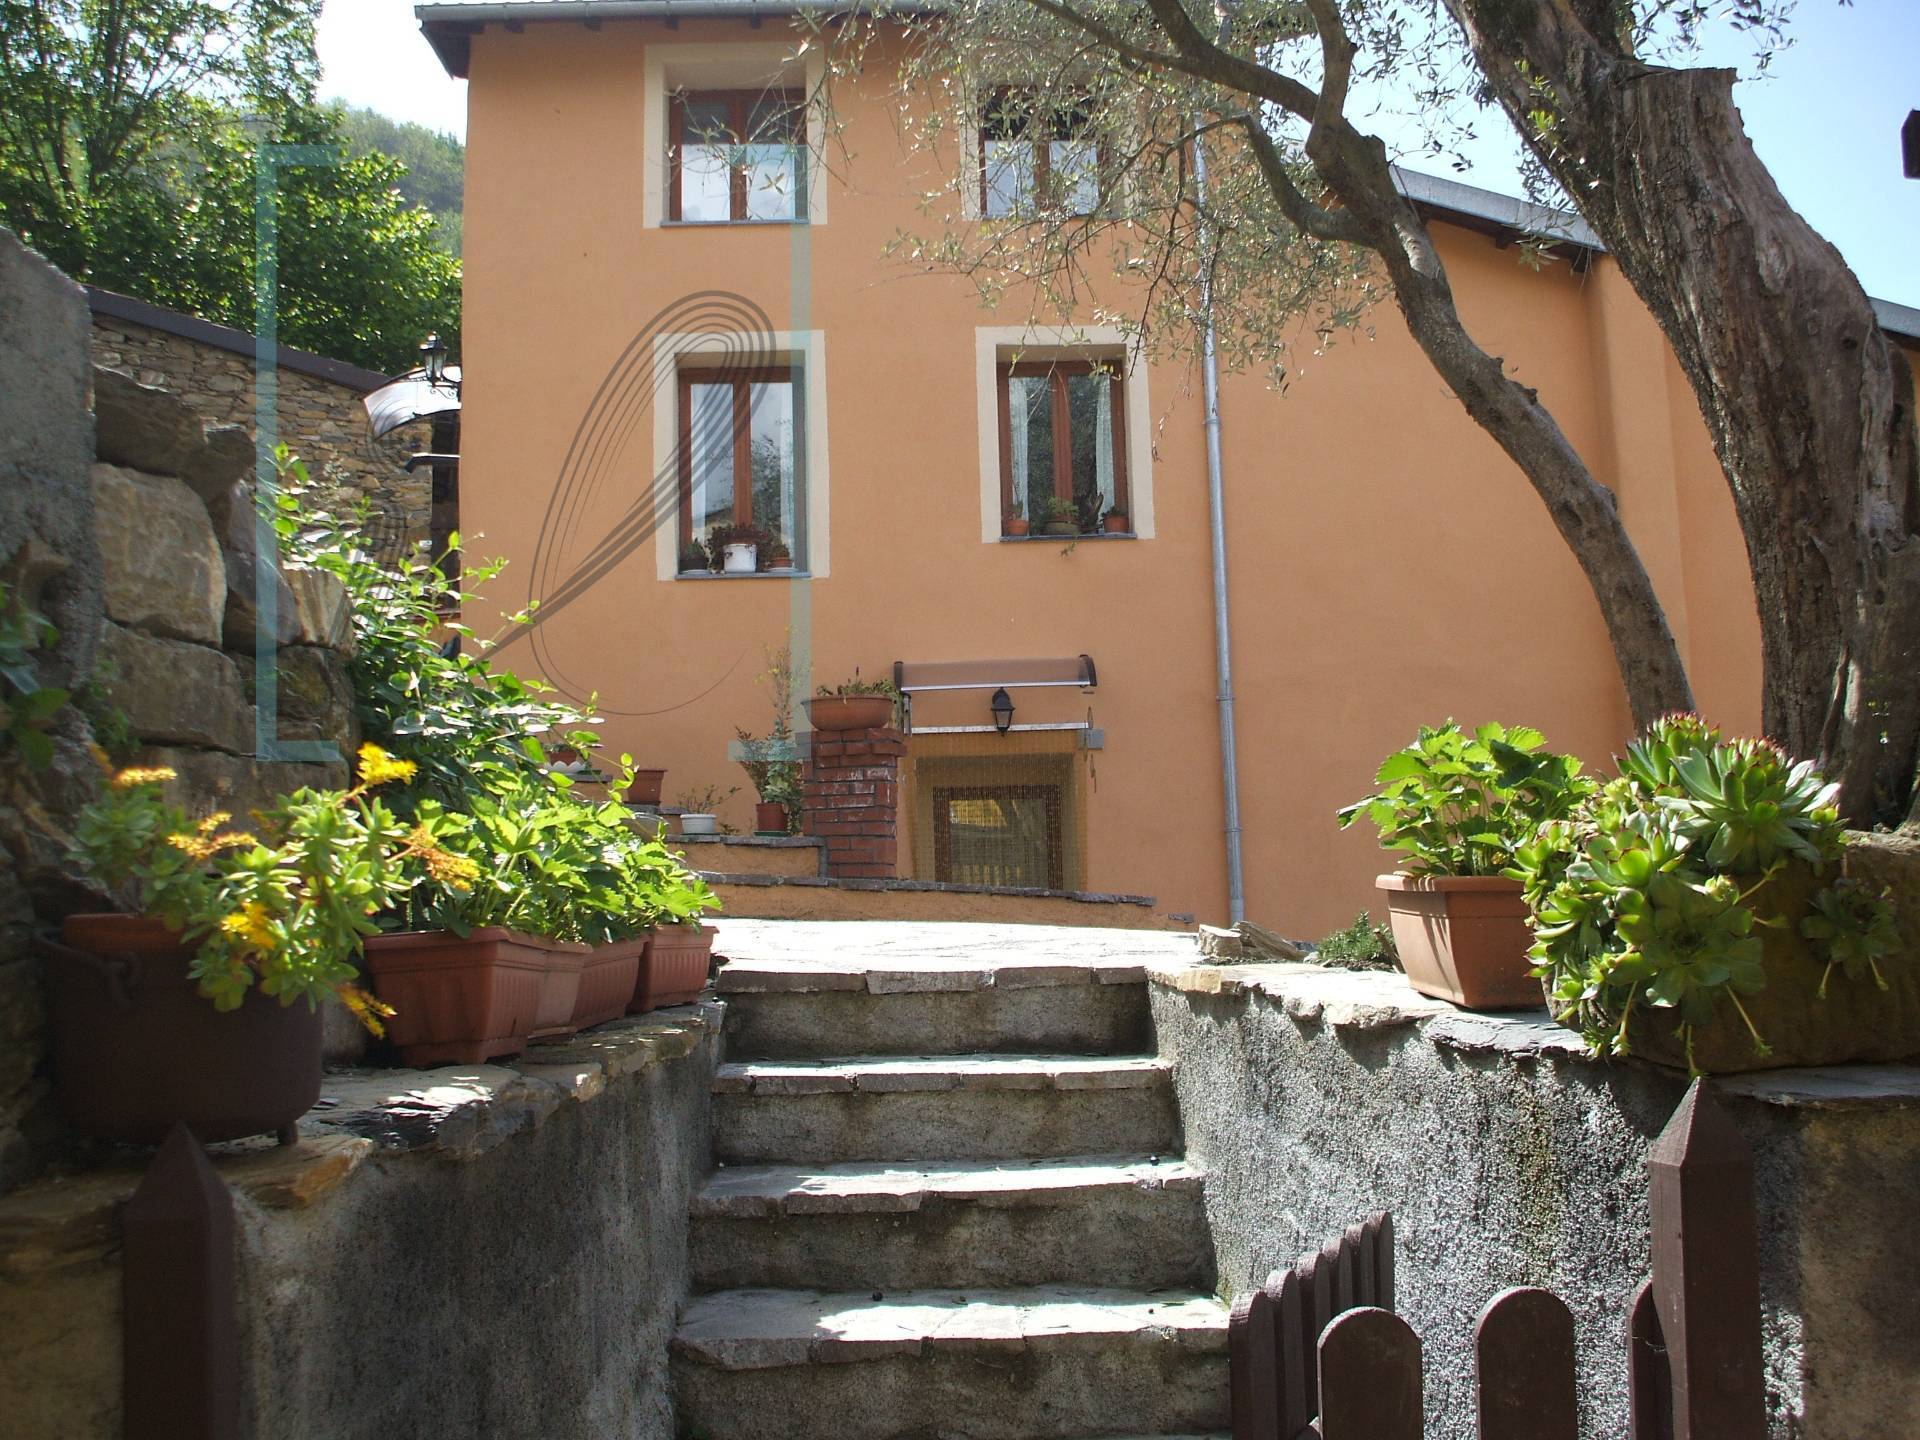 Rustico / Casale in vendita a Borghetto d'Arroscia, 4 locali, prezzo € 90.000 | PortaleAgenzieImmobiliari.it